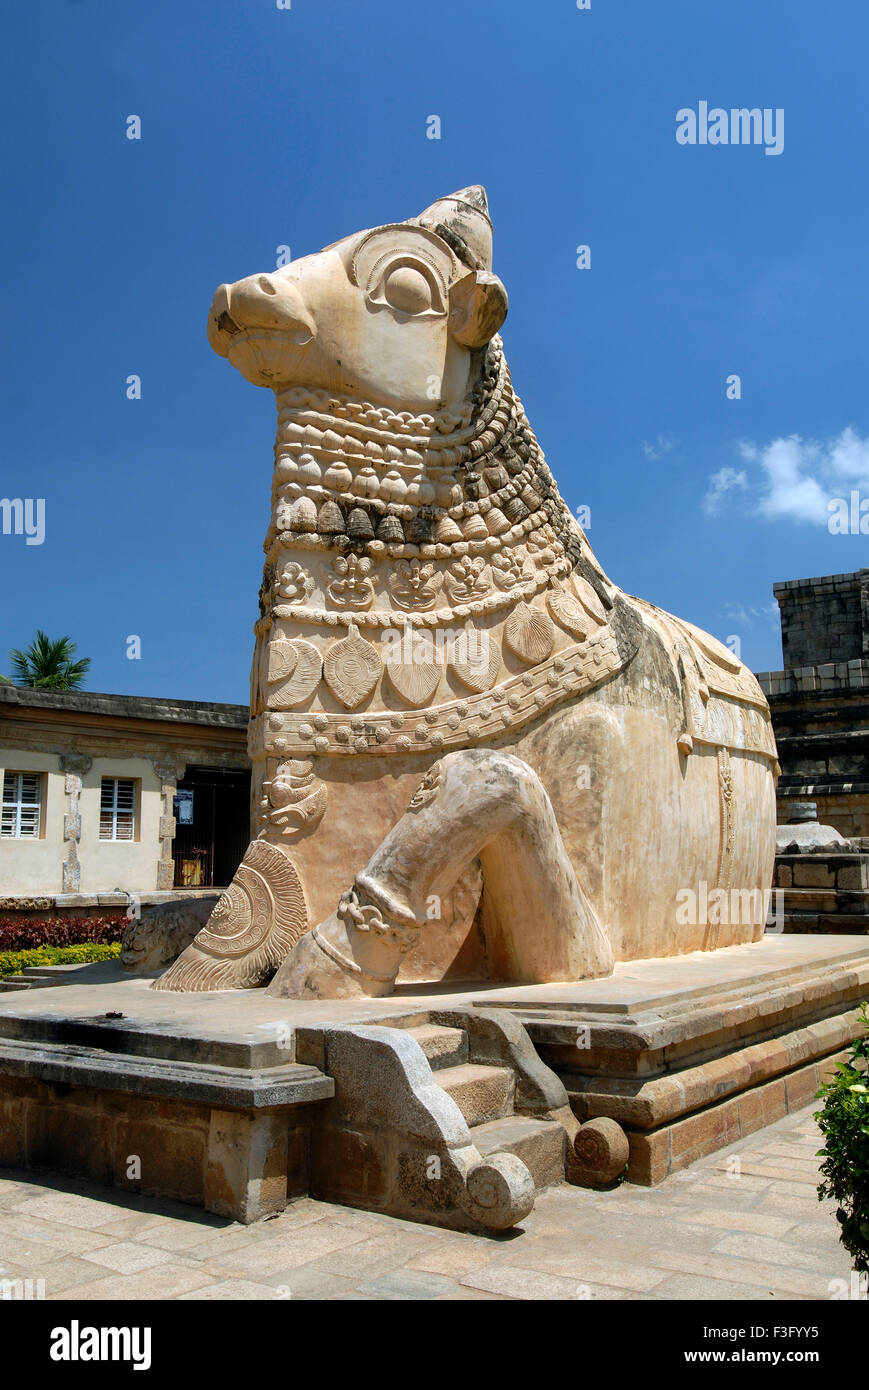 Statue de nandi Gangaikonda Cholapuram ; seigneur ; capitale de la Cholas ; temple de Shiva ; Tamil Nadu Inde ; Banque D'Images